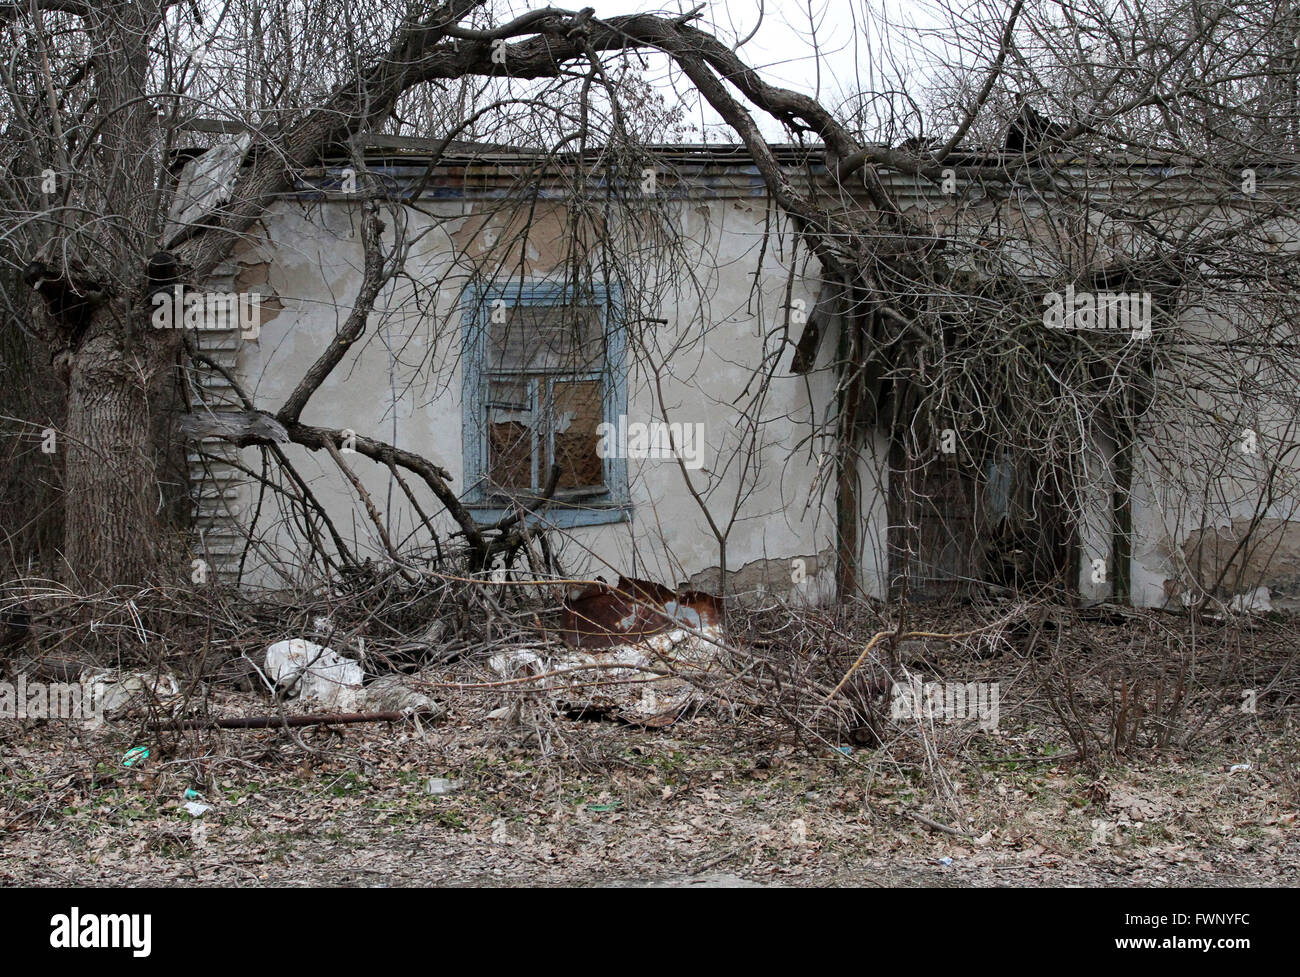 Une photo prise le 28 mars 2011 montre maison abandonnée dans la ville de Tchernobyl, à 9 km de la centrale nucléaire de Tchernobyl. Après l'explosion à la centrale nucléaire de Tchernobyl, 30 km de la zone d'exclusion a été créé autour du site. L'ensemble de ces zones sont désertes et entouré par des points de contrôle. Mar 28, 2011. © Michel Stepanov/ZUMA/Alamy Fil Live News Banque D'Images